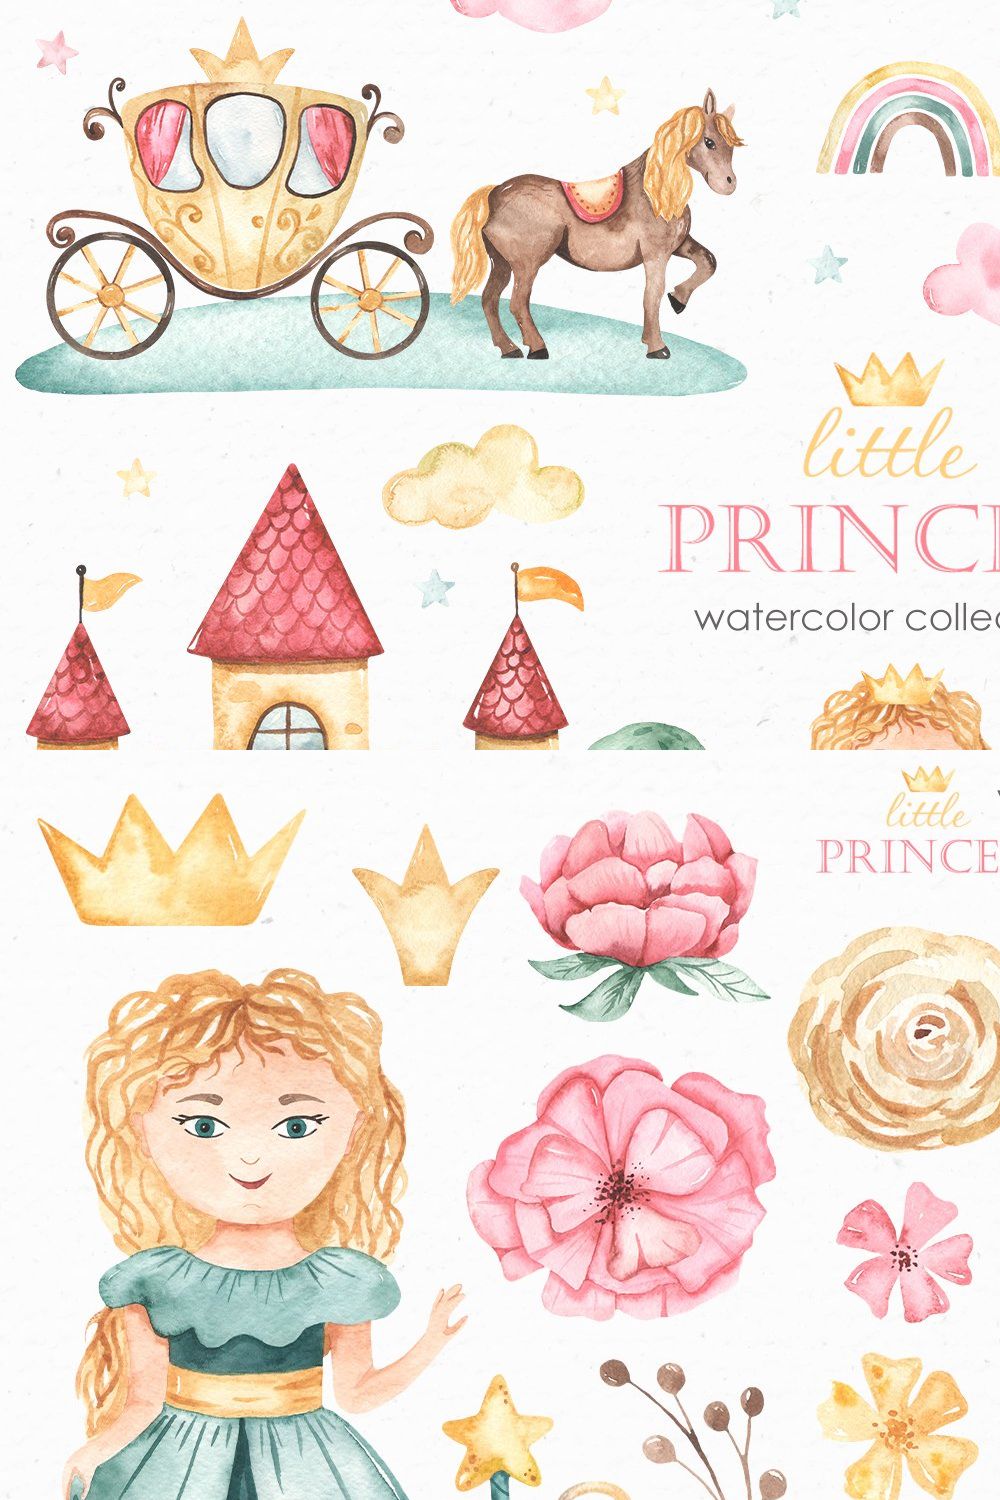 Little princess watercolor pinterest preview image.